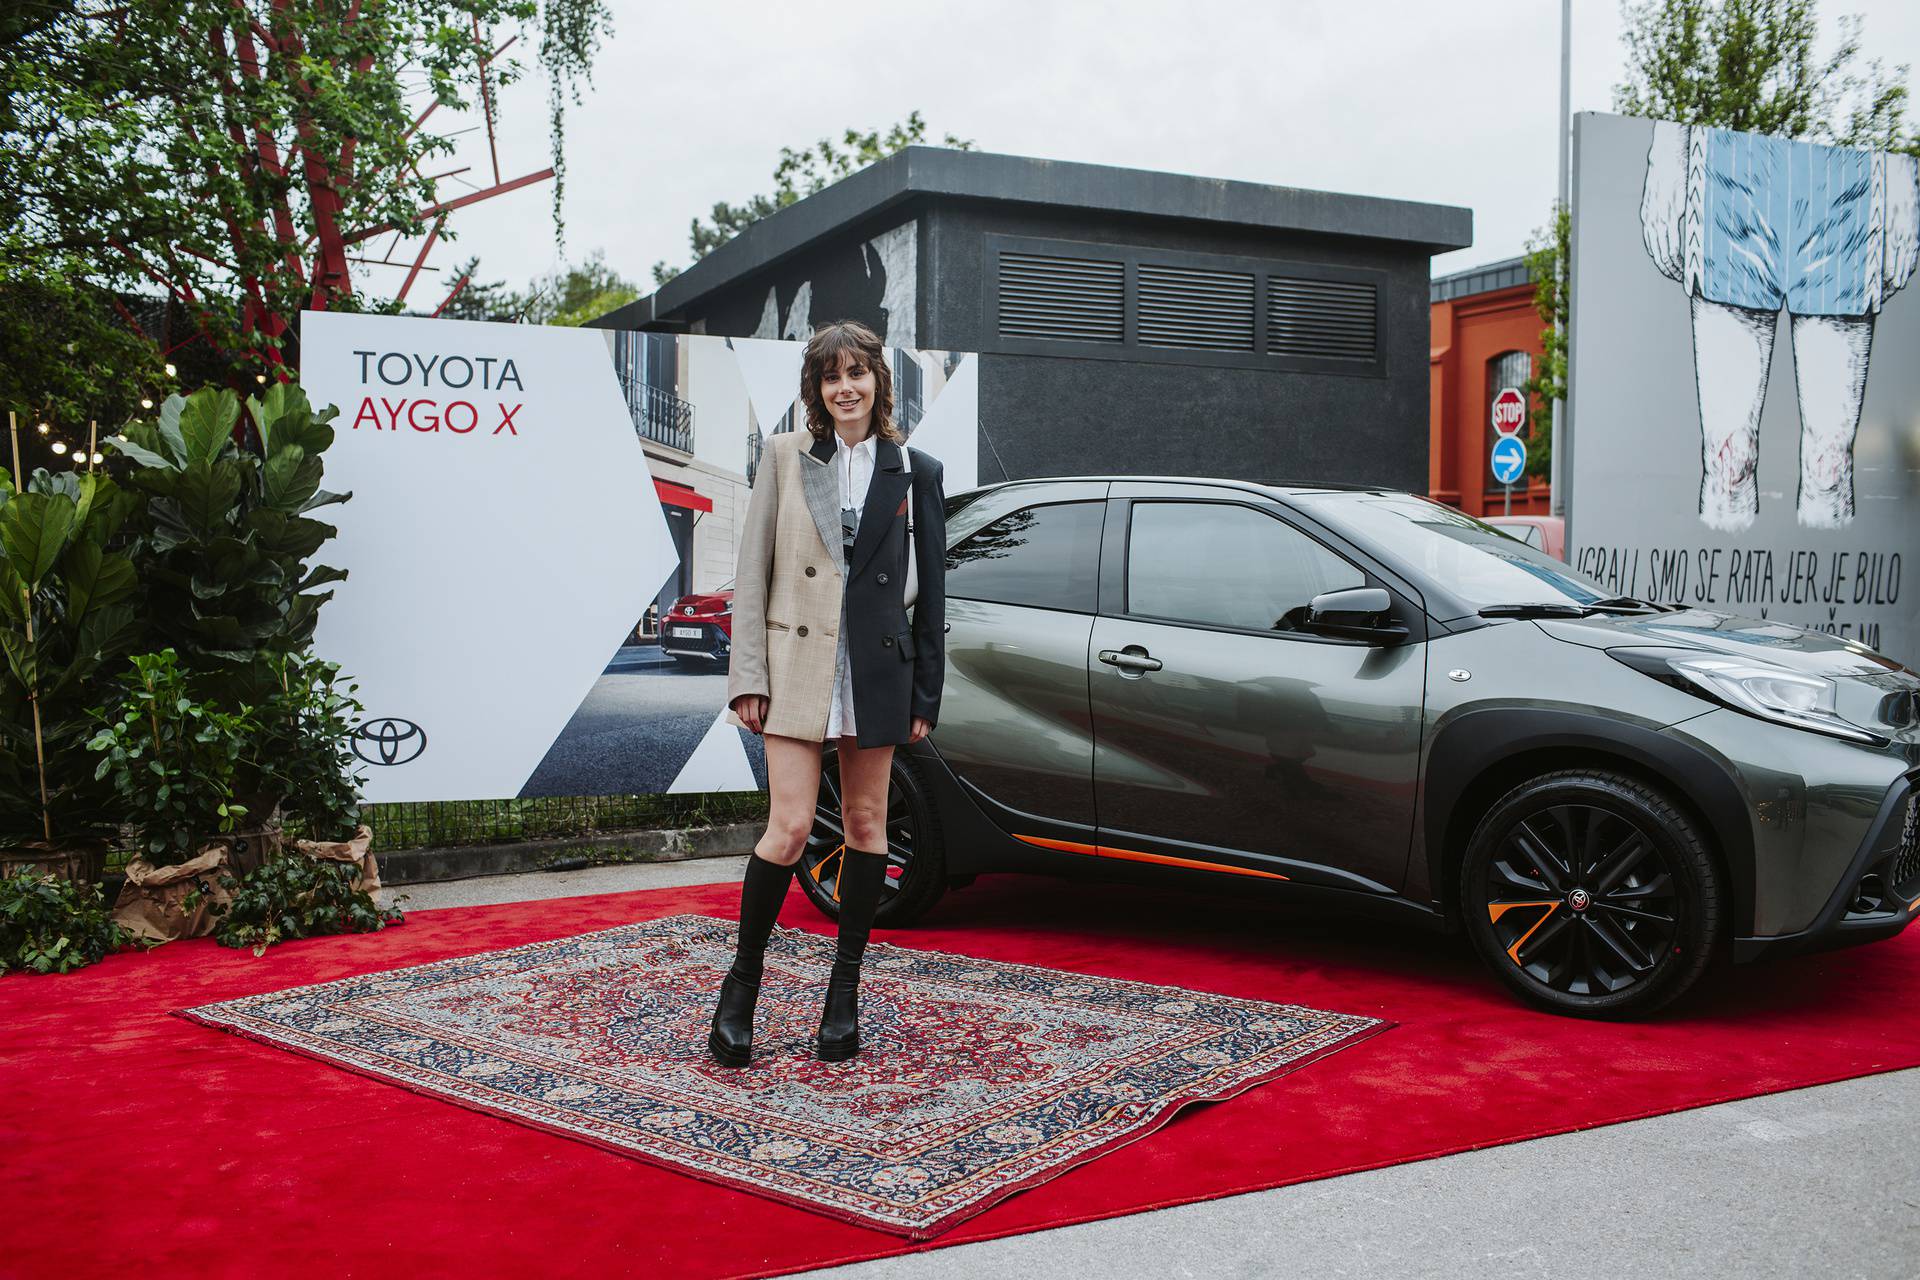 Odlične stvari dolaze u malim pakiranjima – u Hrvatsku stigao Toyota Aygo X